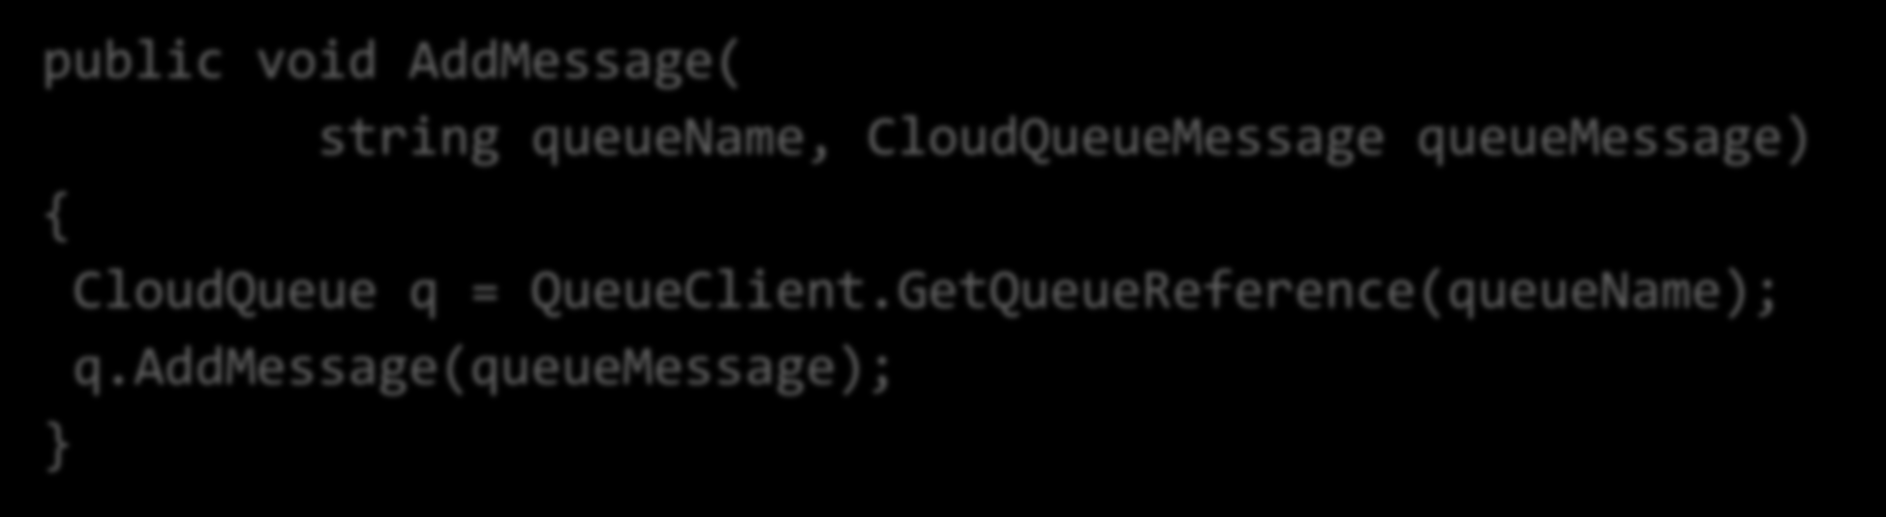 StorageClient API: Suporte síncrono public void AddMessage( string queuename, CloudQueueMessage